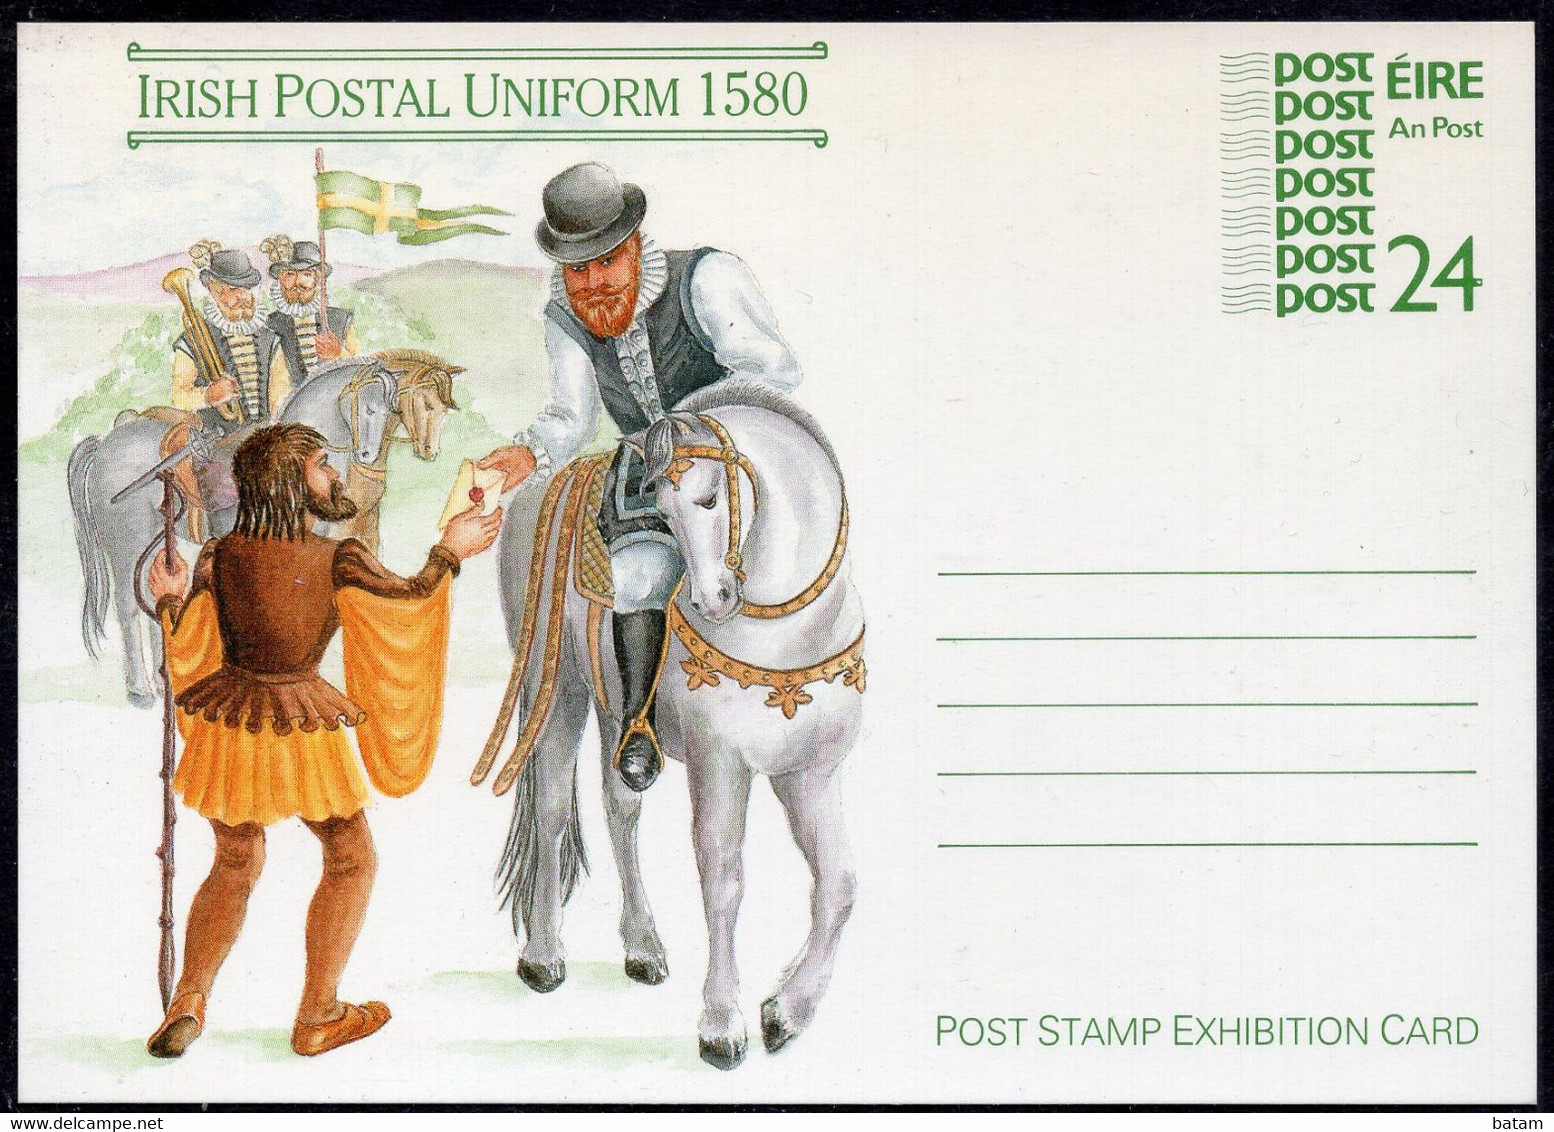 111 - Ireland - Irish Postal Uniform 1580 - Post Stamp Exhibition Card - Unused - Ganzsachen